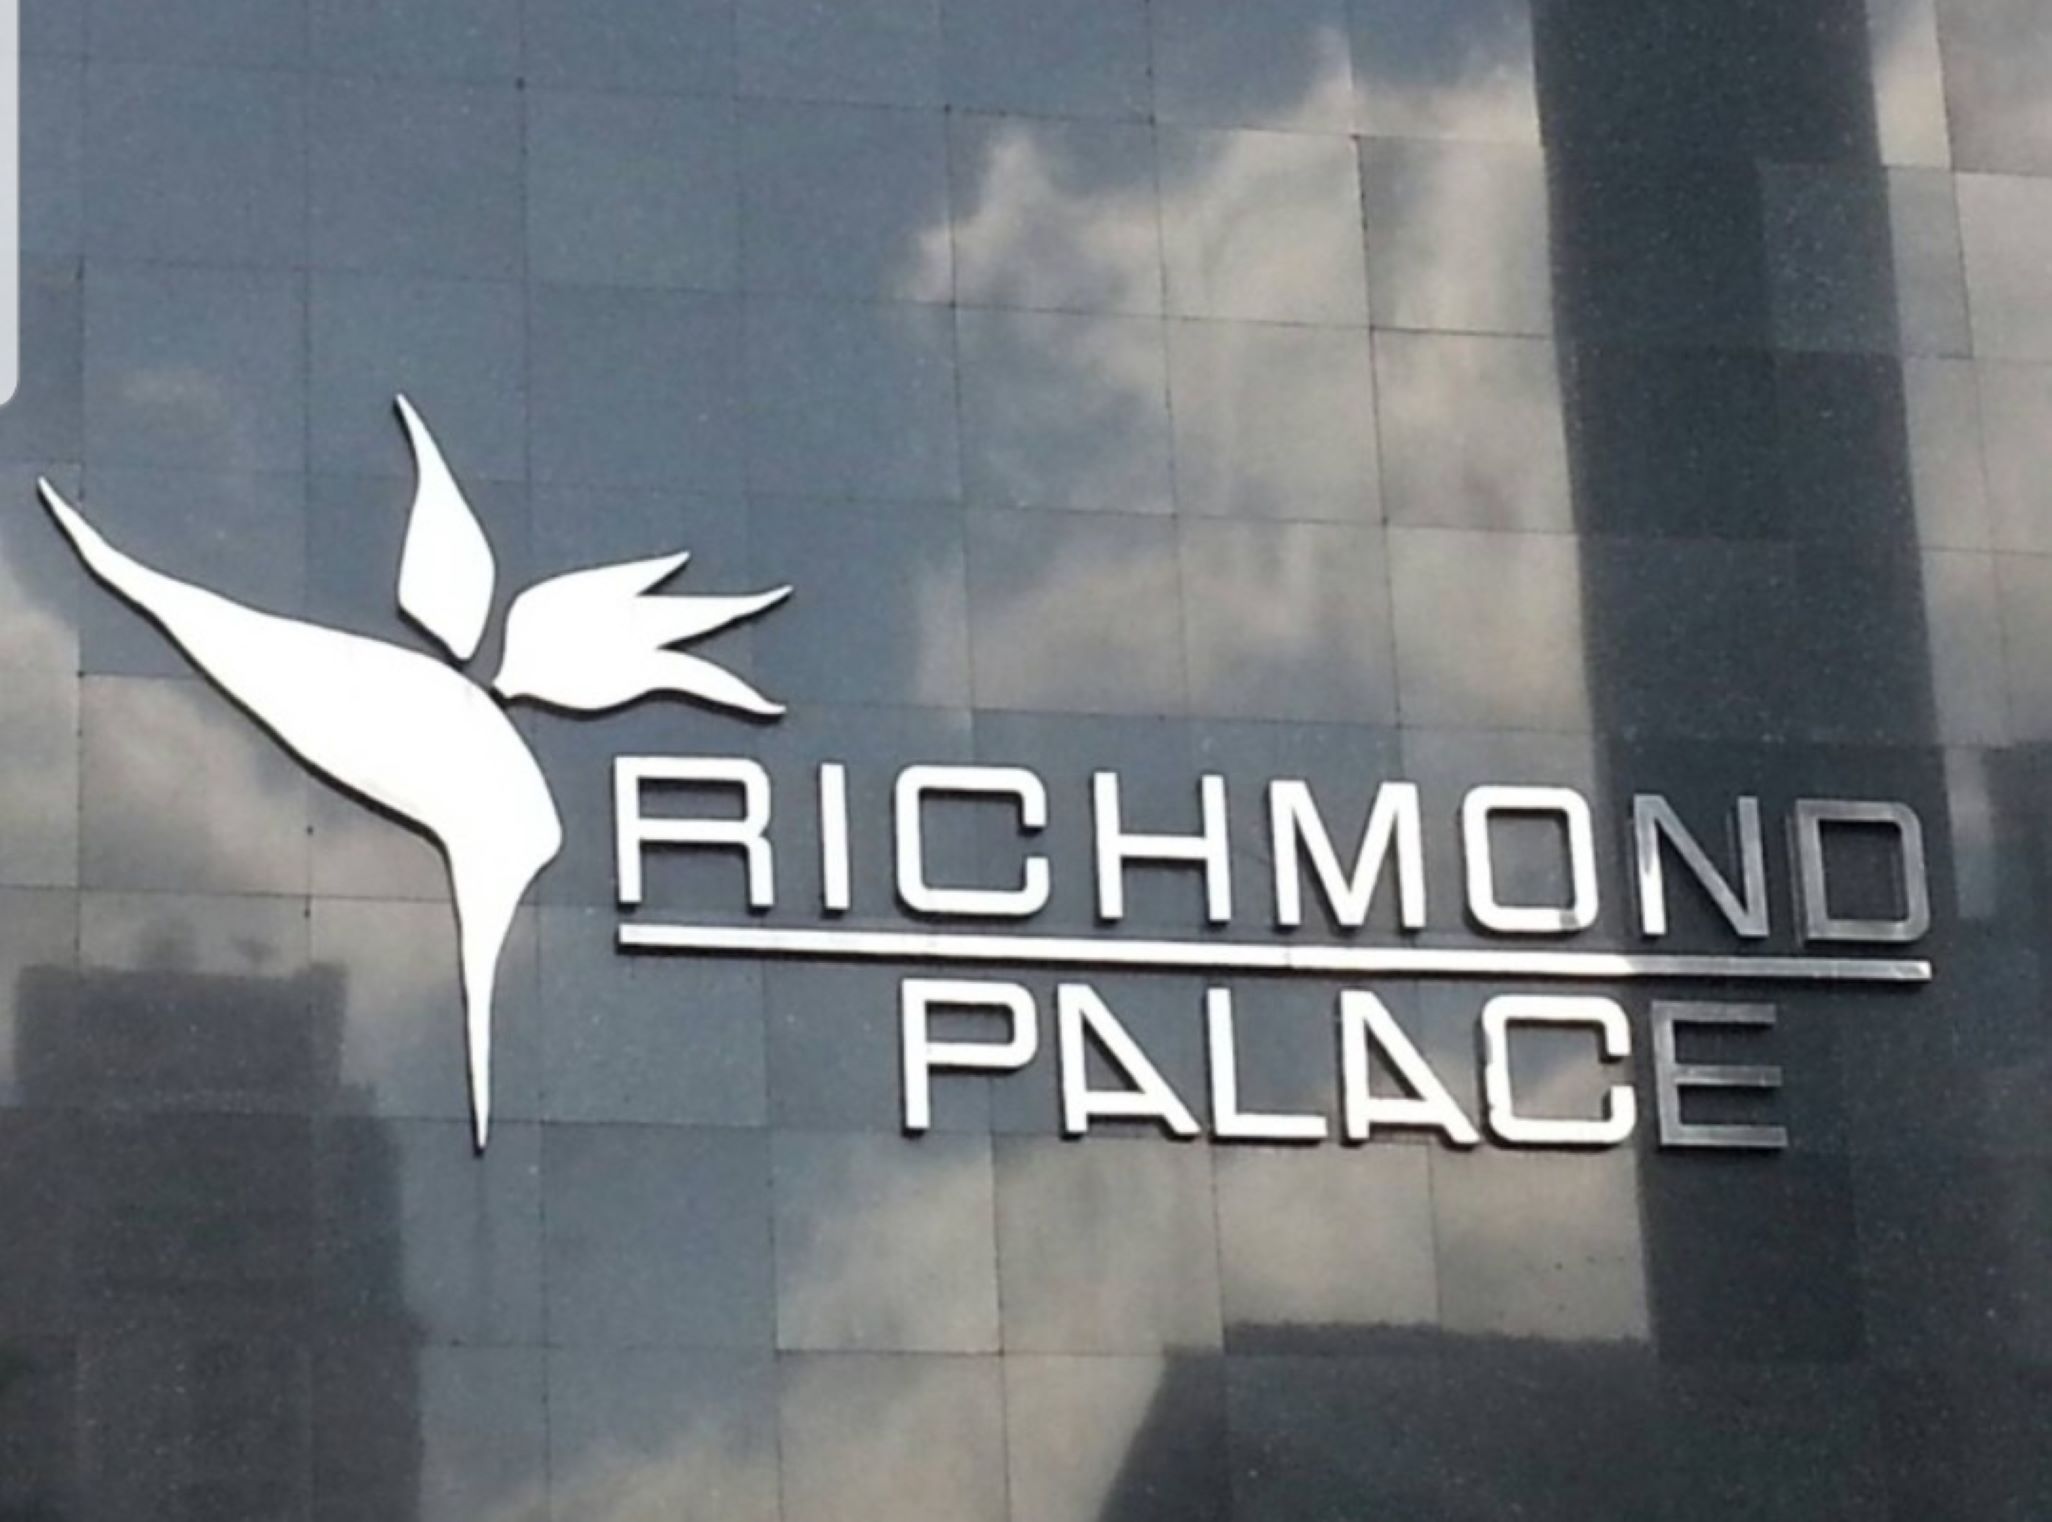 Richmond Palace ริชมอนด์ พาเลซ